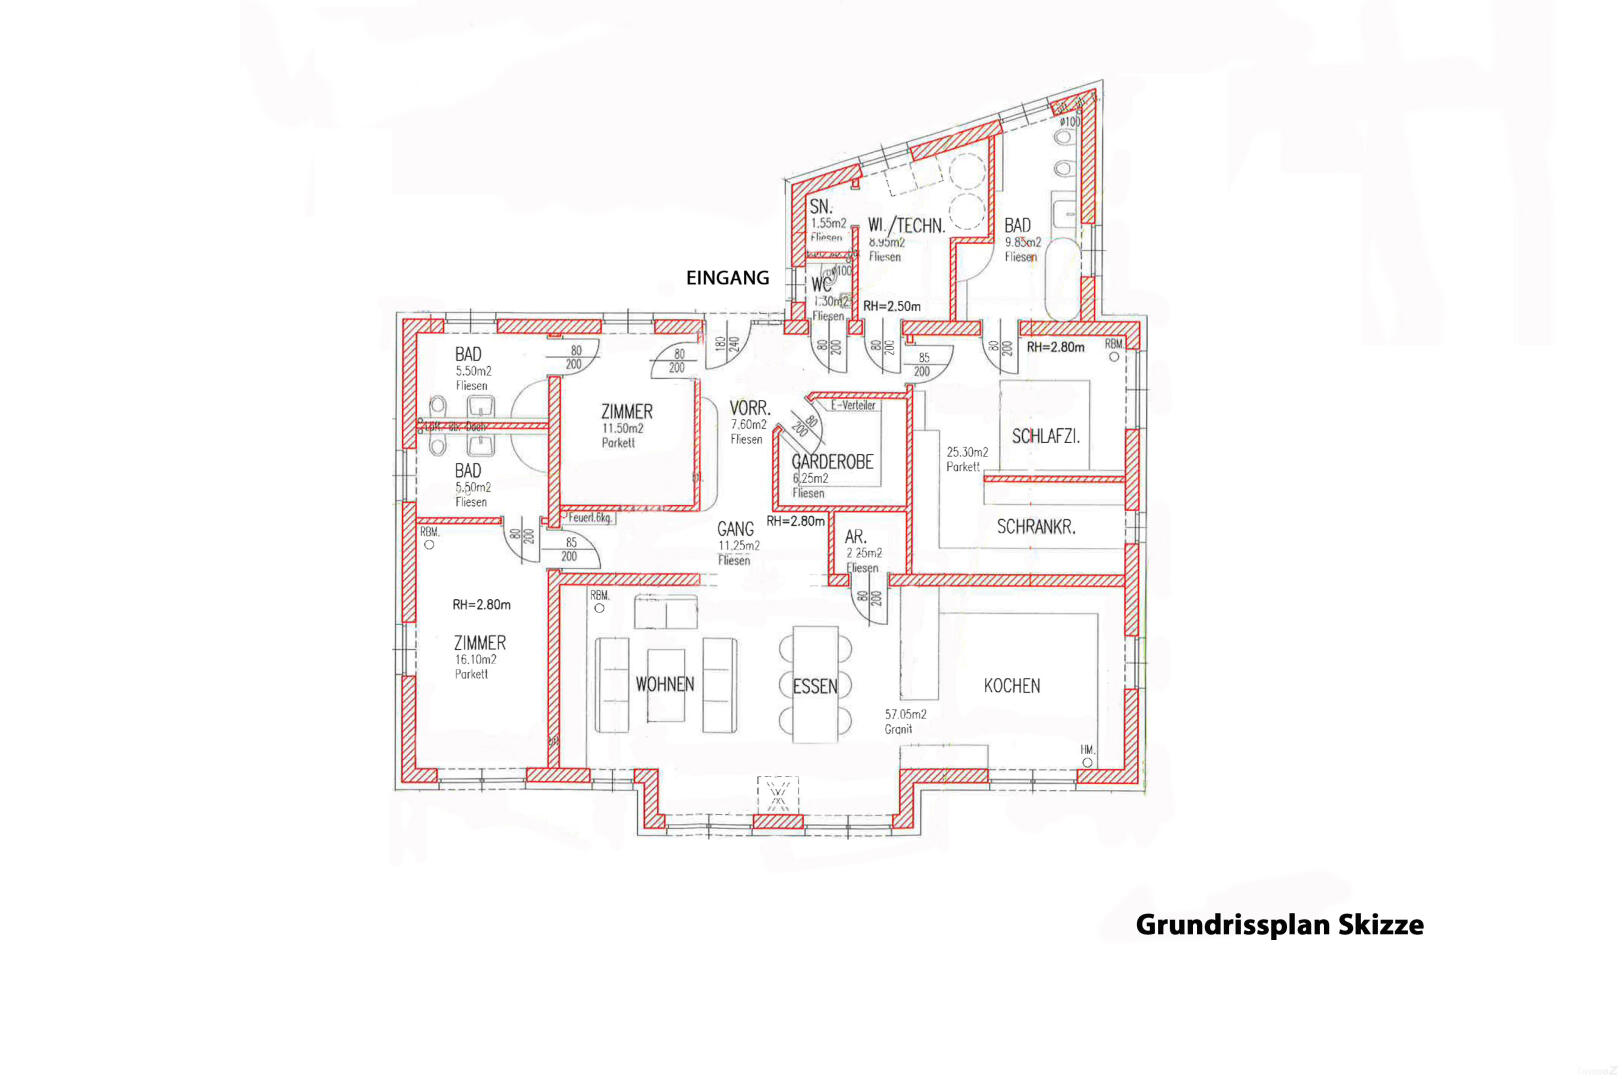 Haus zu kaufen: Forststraße 32, 8101 Gratkorn - Grundriss Skizze